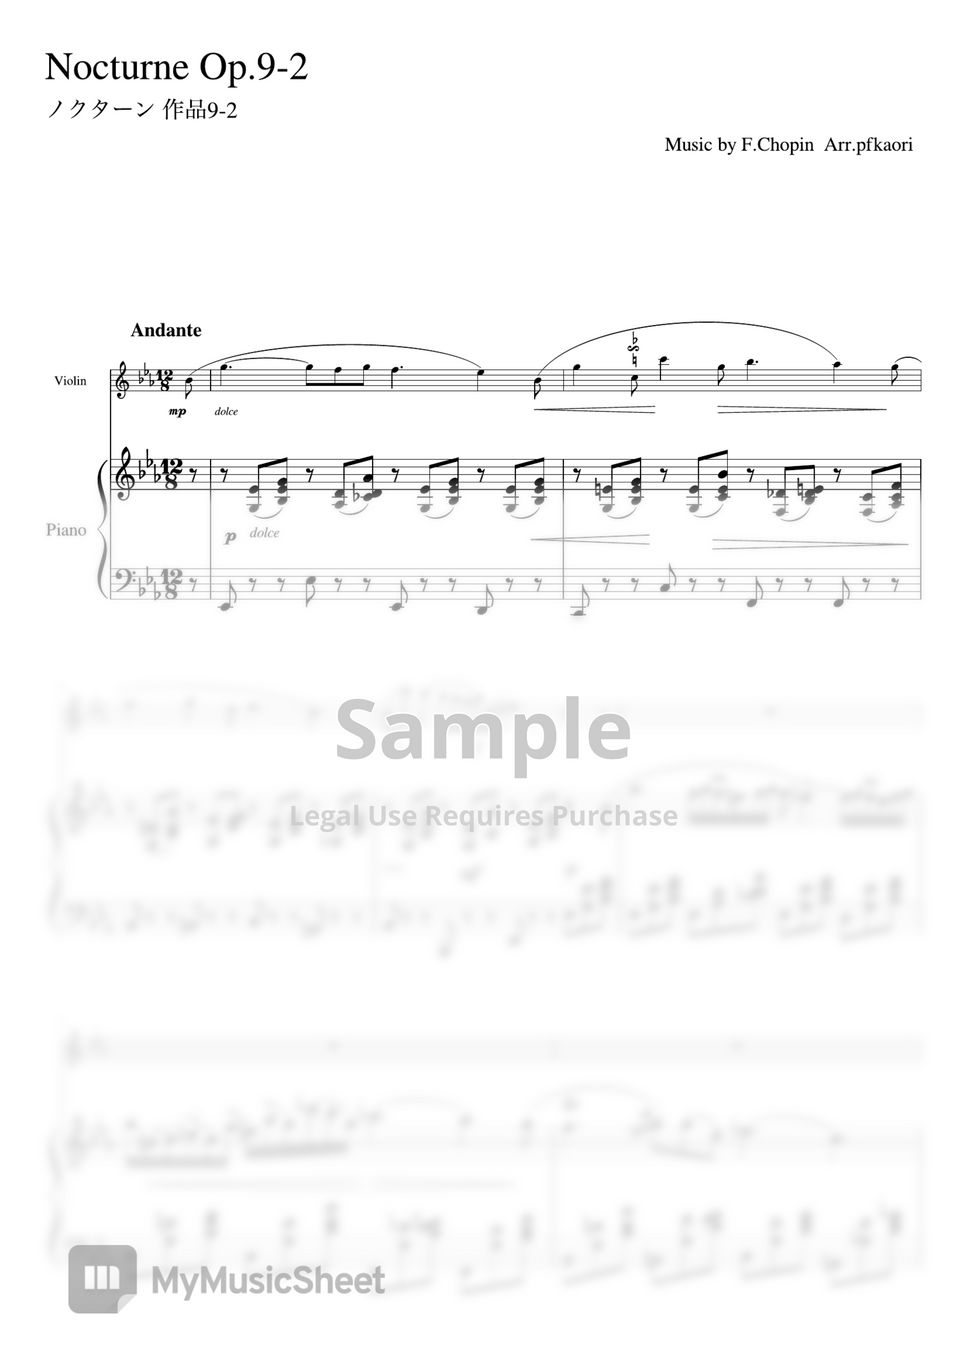 chopin - Nocturne op.9-2 (violin piano) by pfkaori